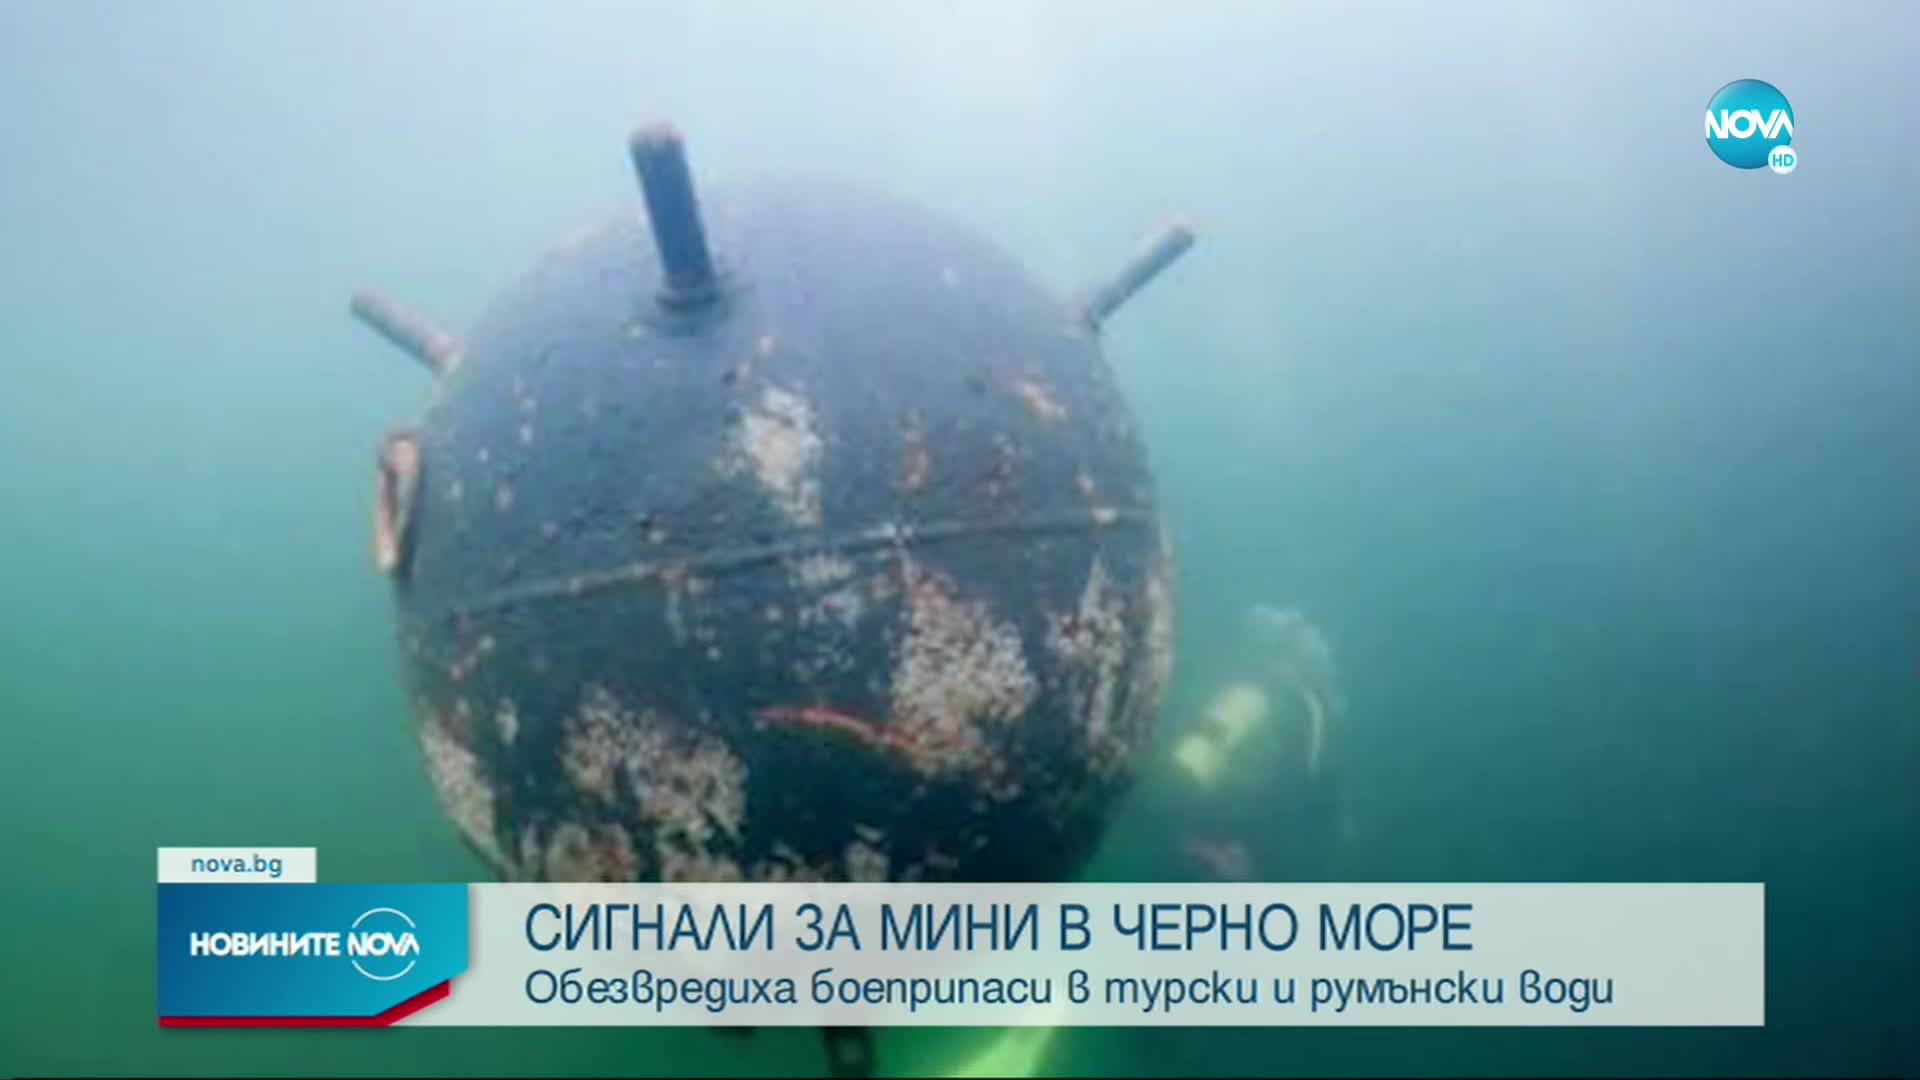 Само за ден: Три сигнала за мини в Черно море